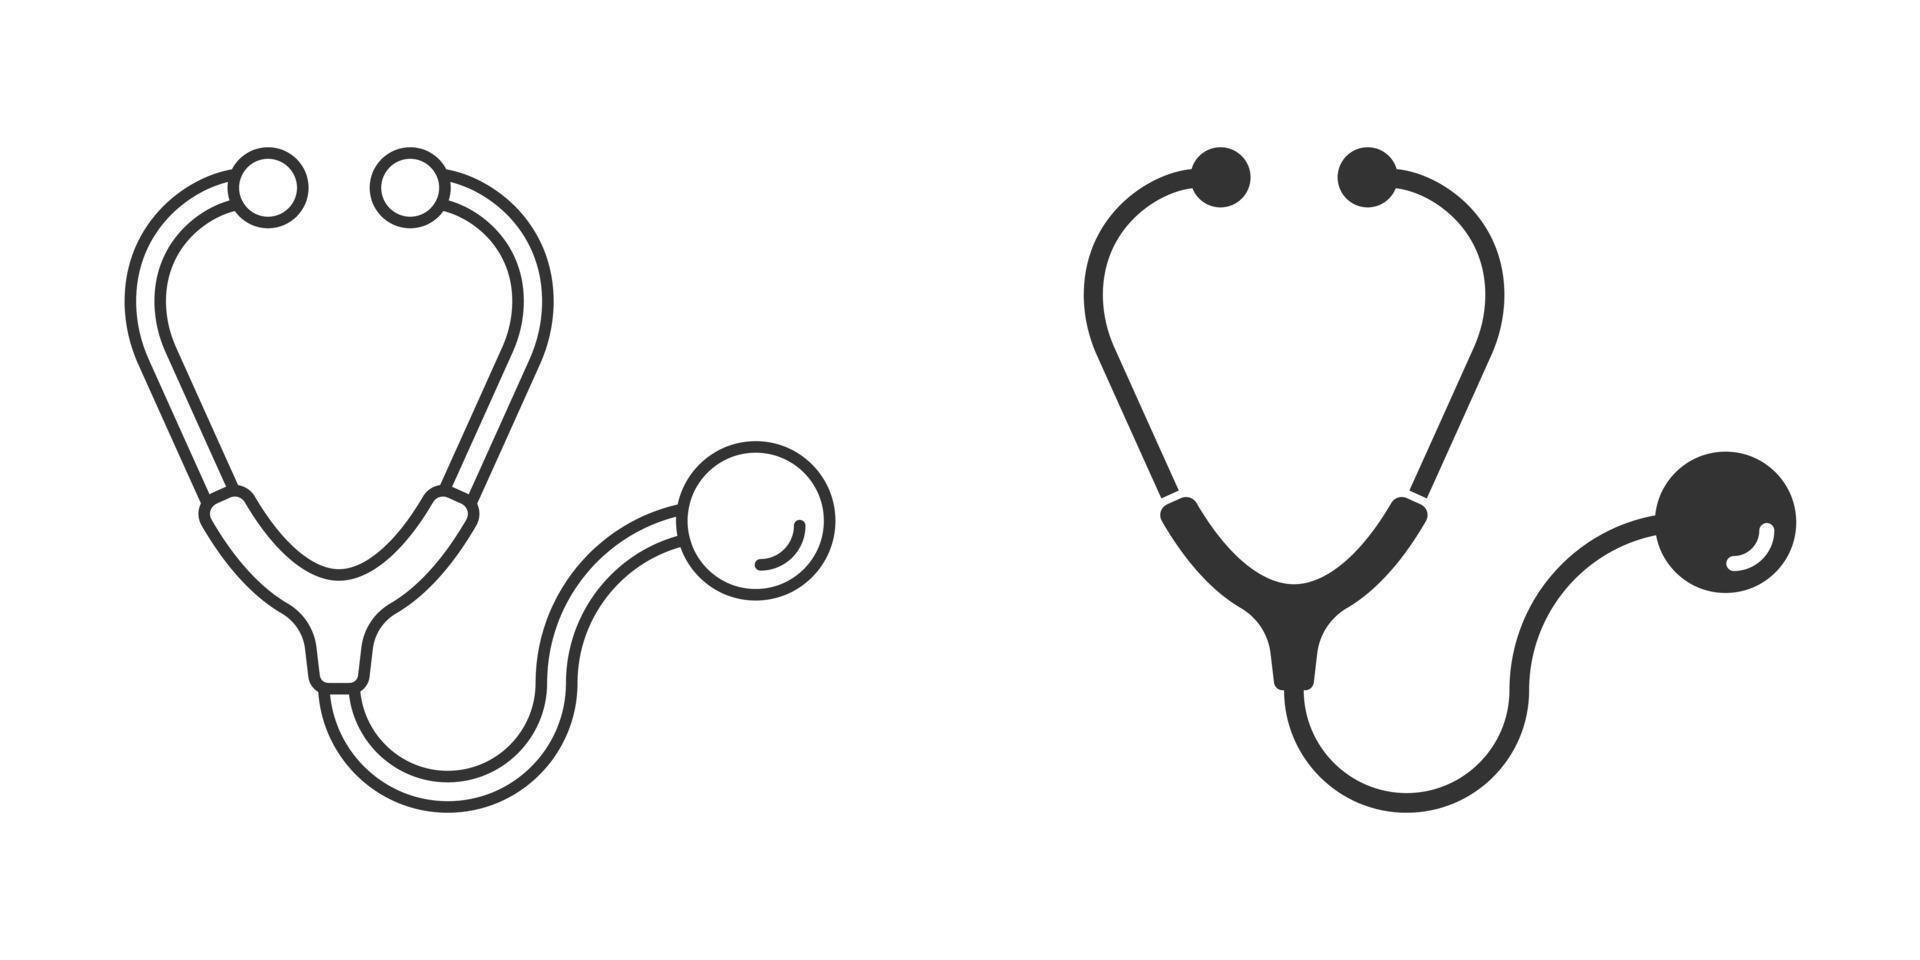 ícone do estetoscópio em estilo simples. ilustração em vetor diagnóstico de coração em fundo isolado. conceito de negócio de sinal de medicina.